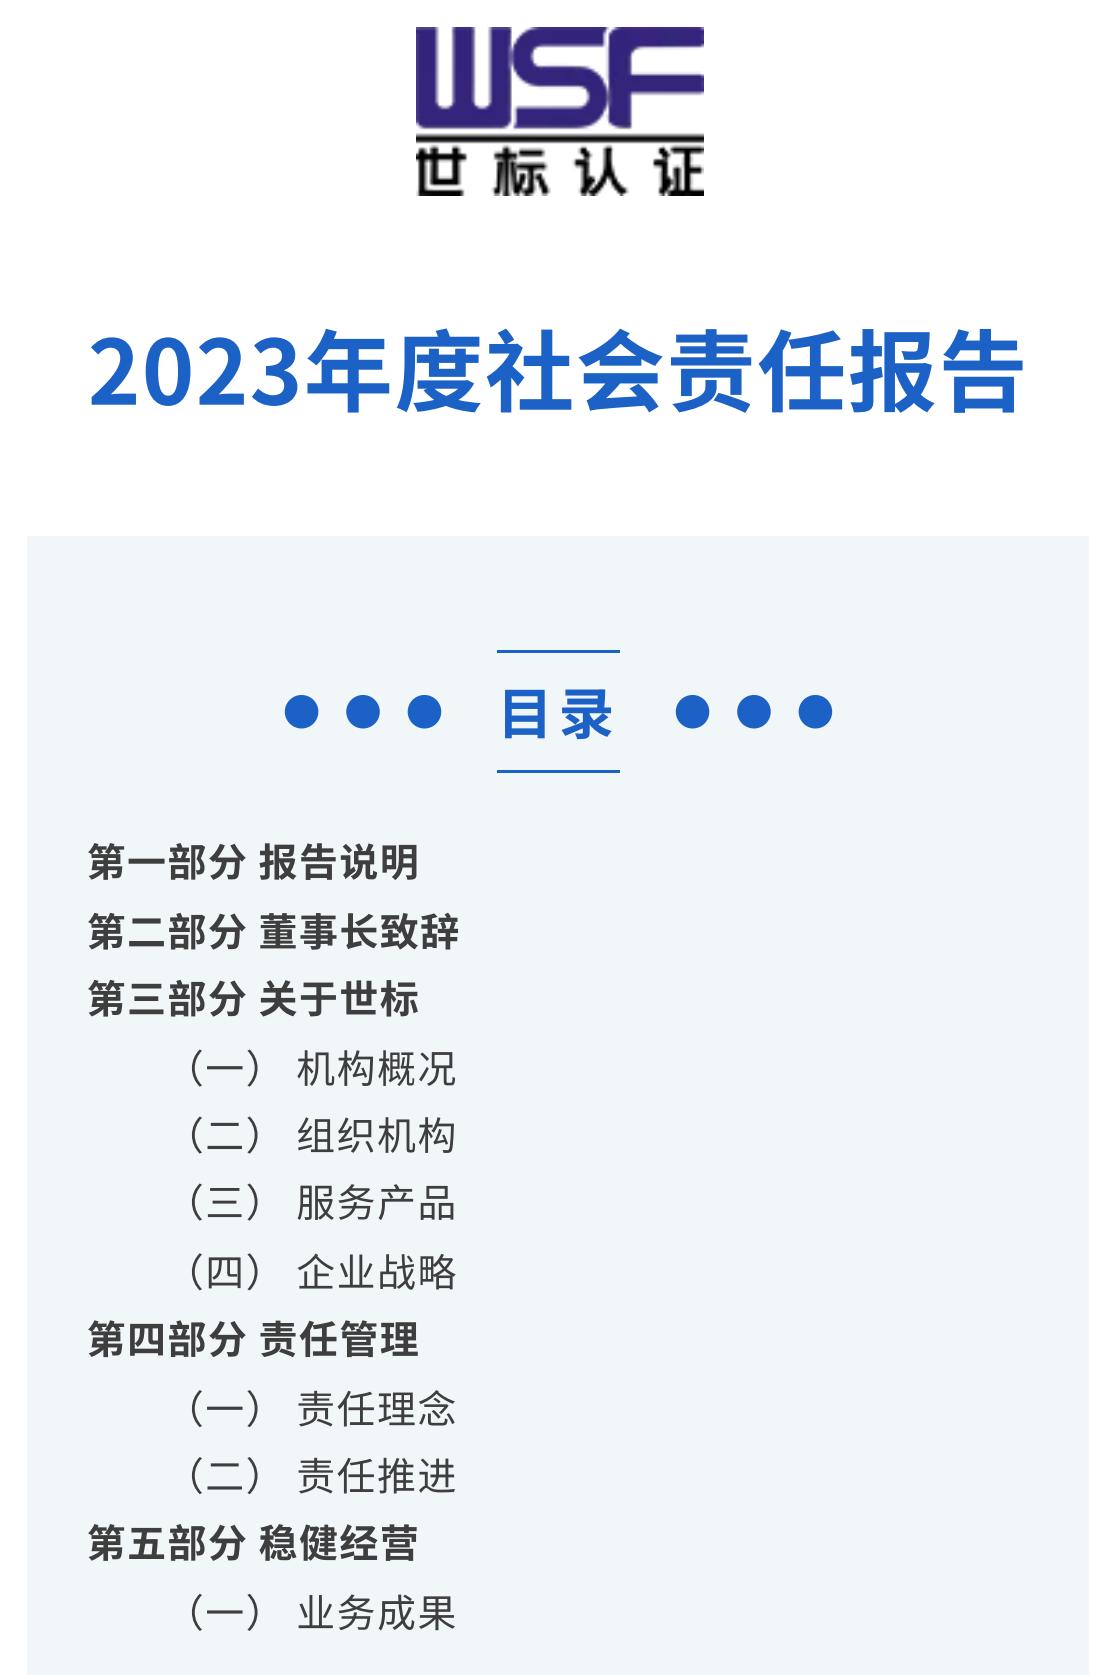 2023年度社会责任报告-2_00.jpg